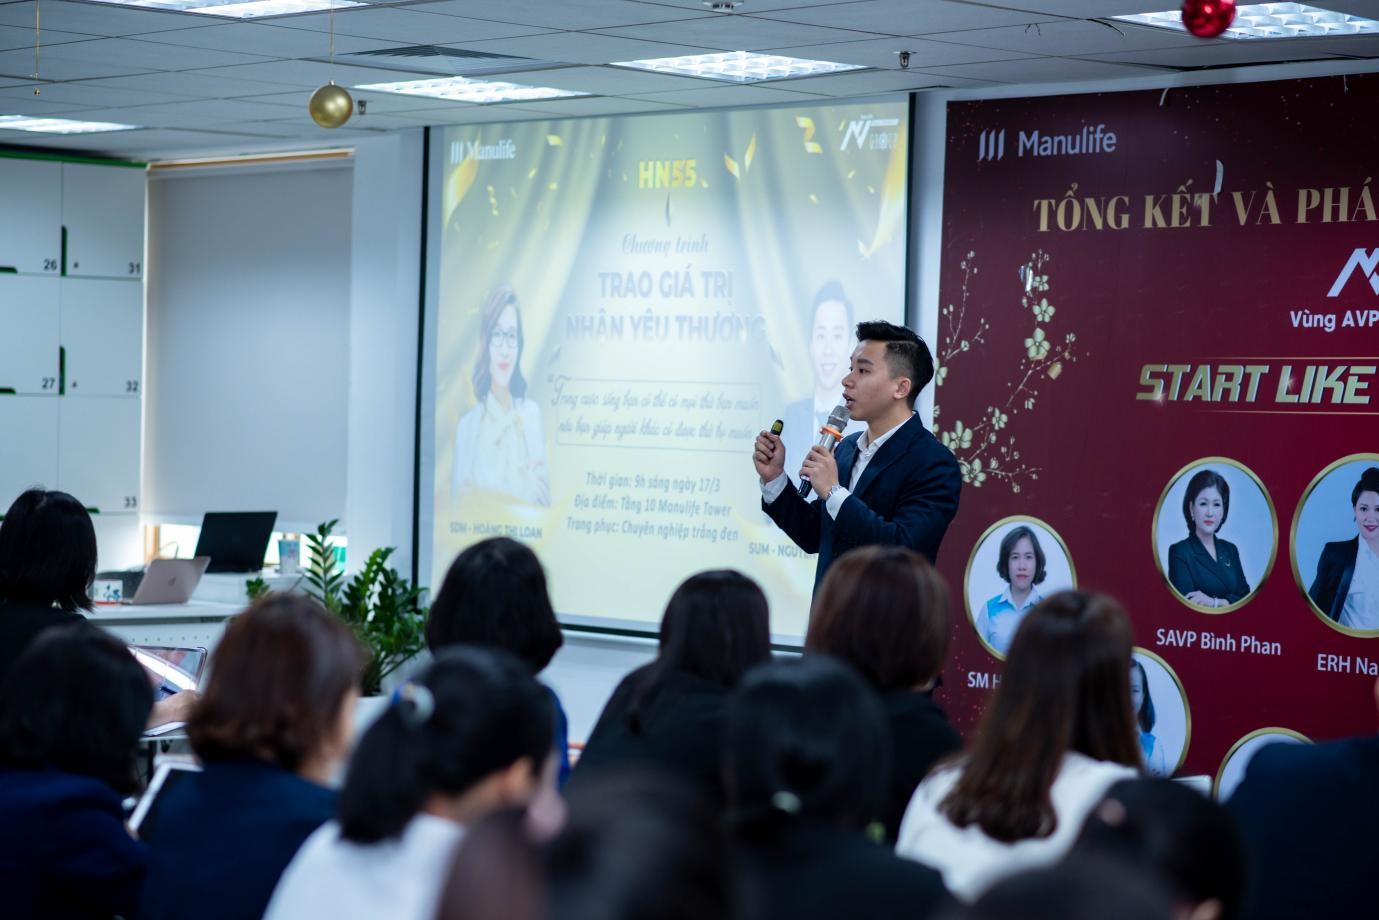 Nguyễn Đức Dương đào tạo trong chương trình Trao giá trị, nhận yêu thương.